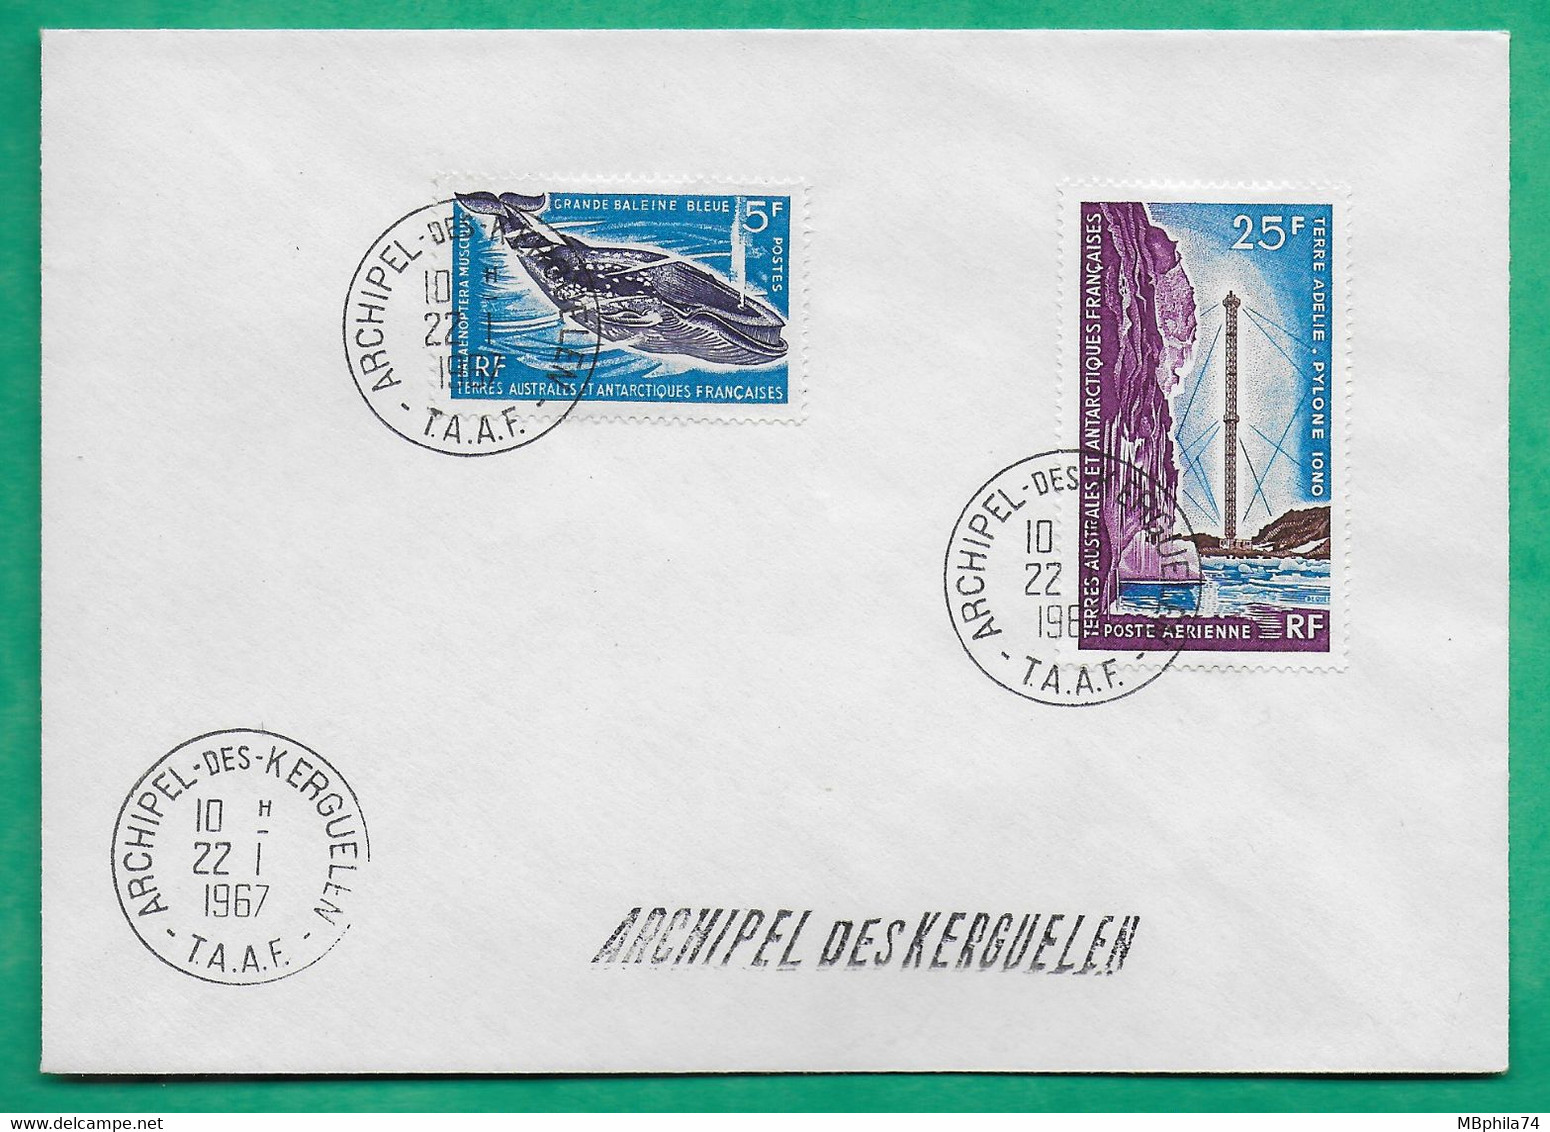 YT N°22 BALEINE + N°13 POSTE AERIENNE PYLONE TERRE ADELIE TAAF ARCHIPEL DES KERGUELEN 1967 LETTRE COVER FRANCE - Used Stamps